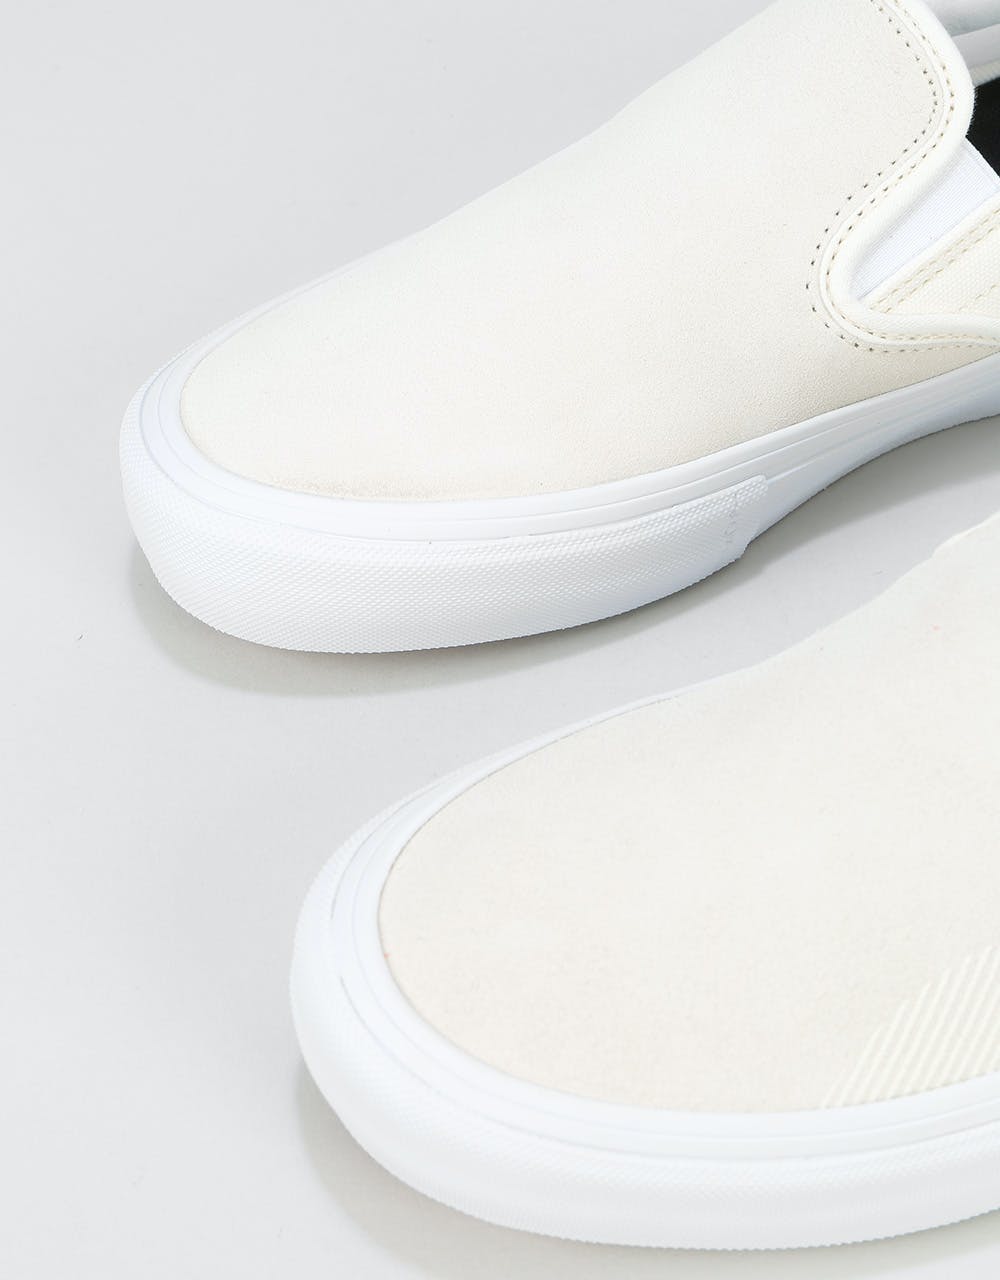 Vans Slip-On Pro Skate Shoes - (Rubber Print) Marshmallow